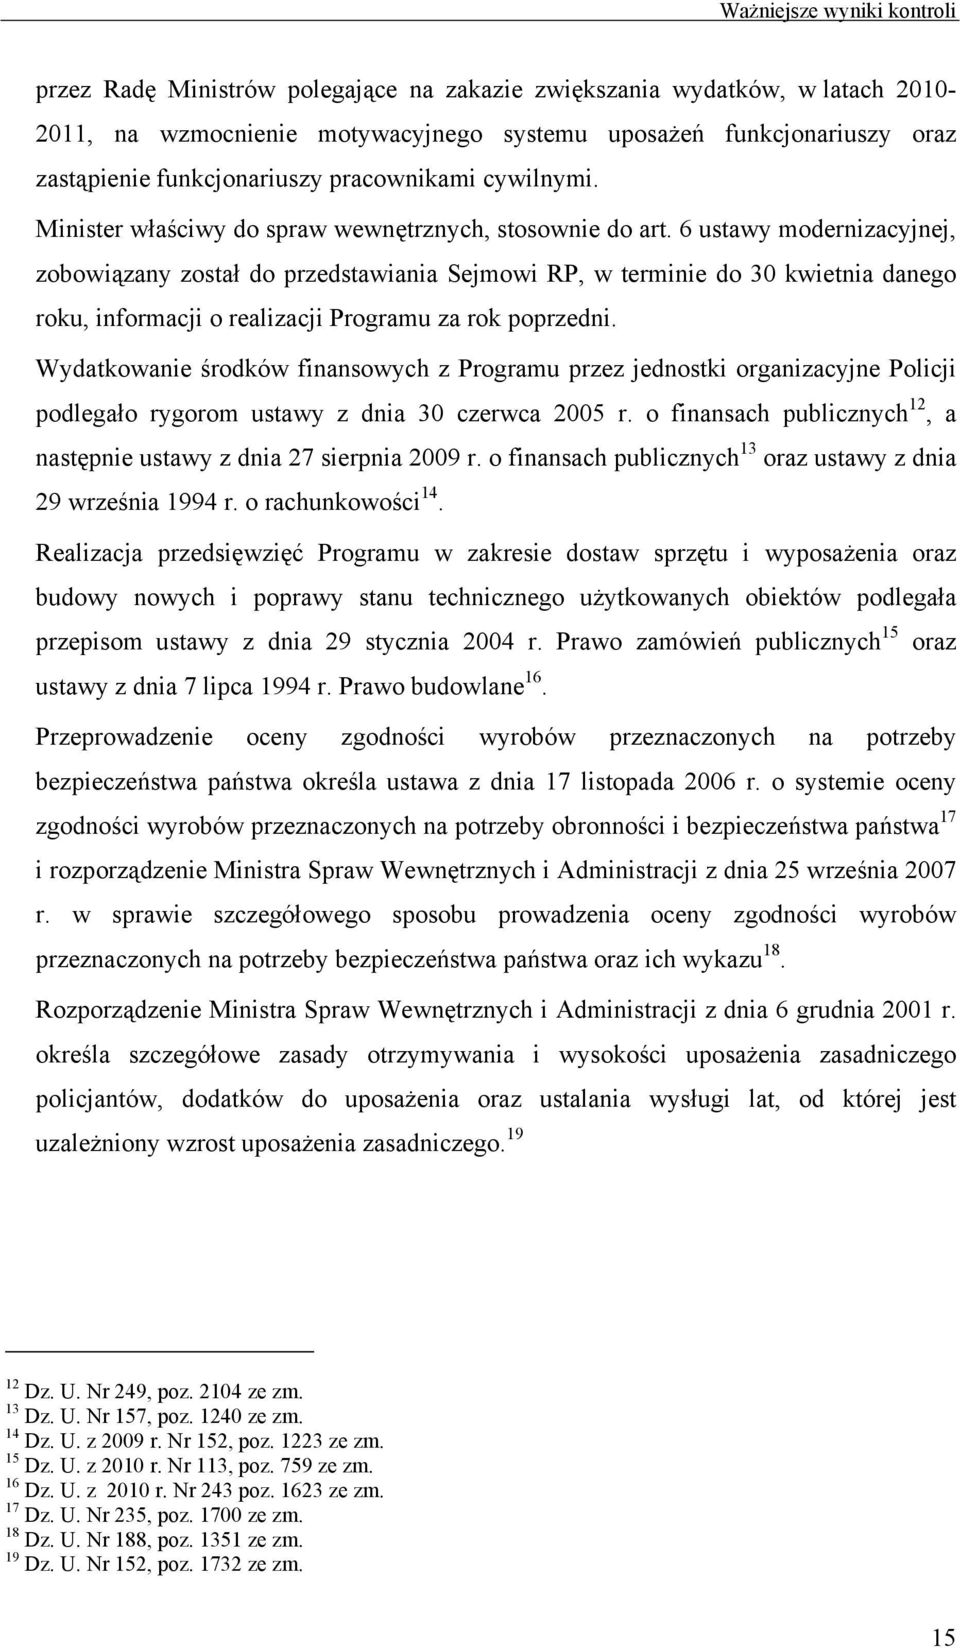 6 ustawy modernizacyjnej, zobowiązany został do przedstawiania Sejmowi RP, w terminie do 30 kwietnia danego roku, informacji o realizacji Programu za rok poprzedni.